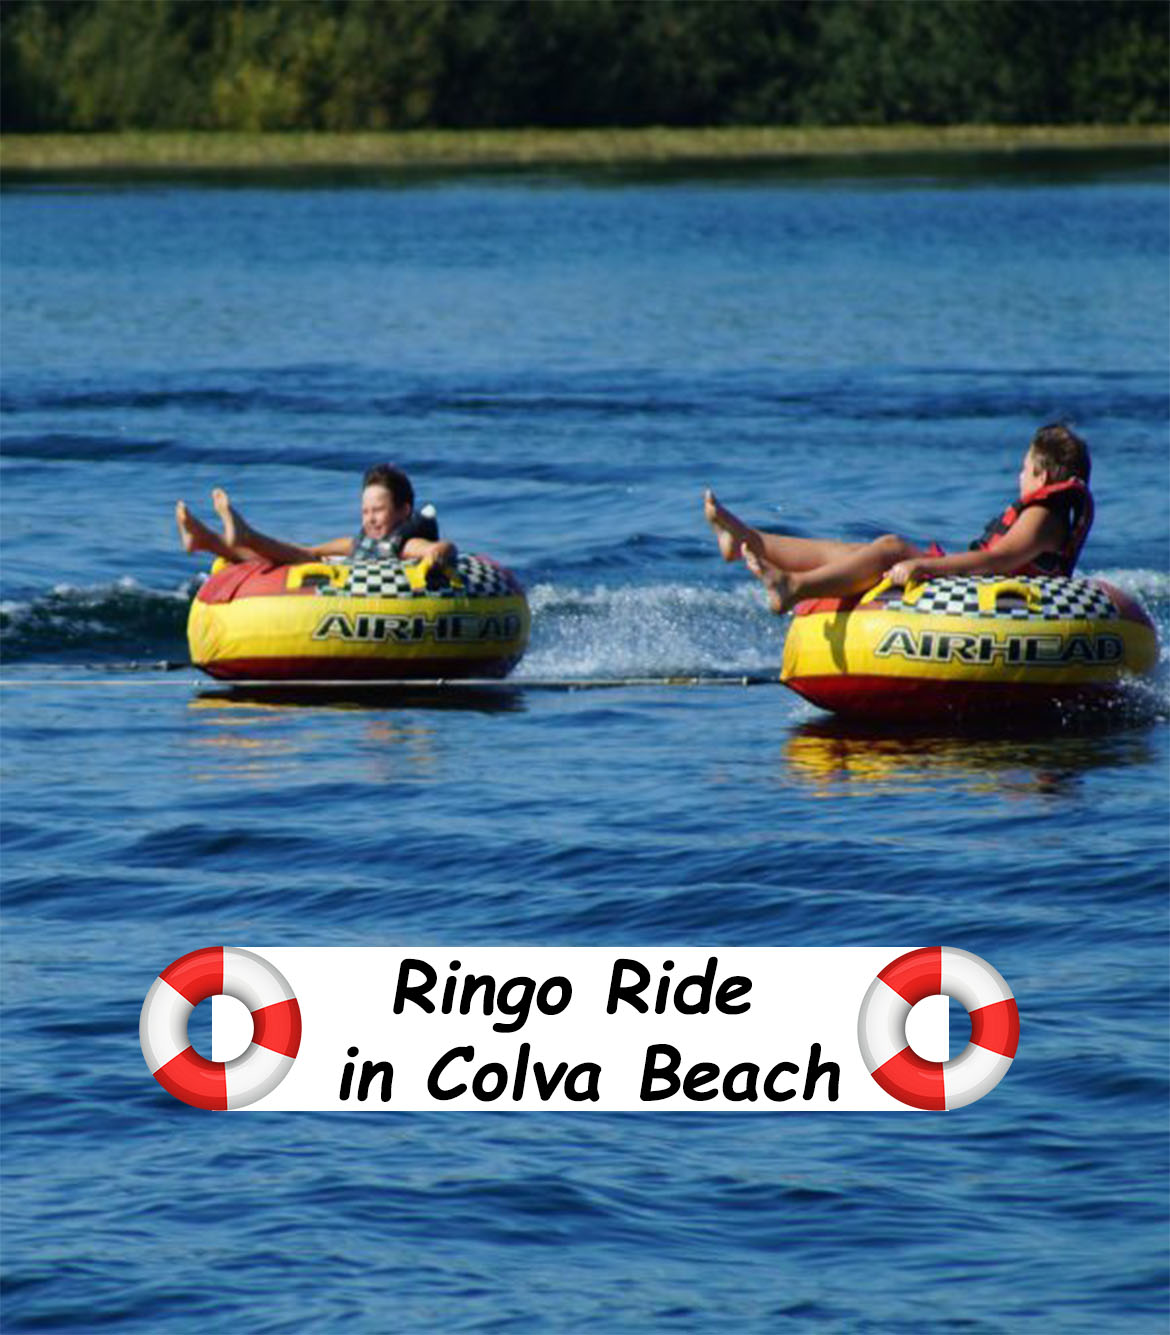 Ringo Ride in Colva Beach